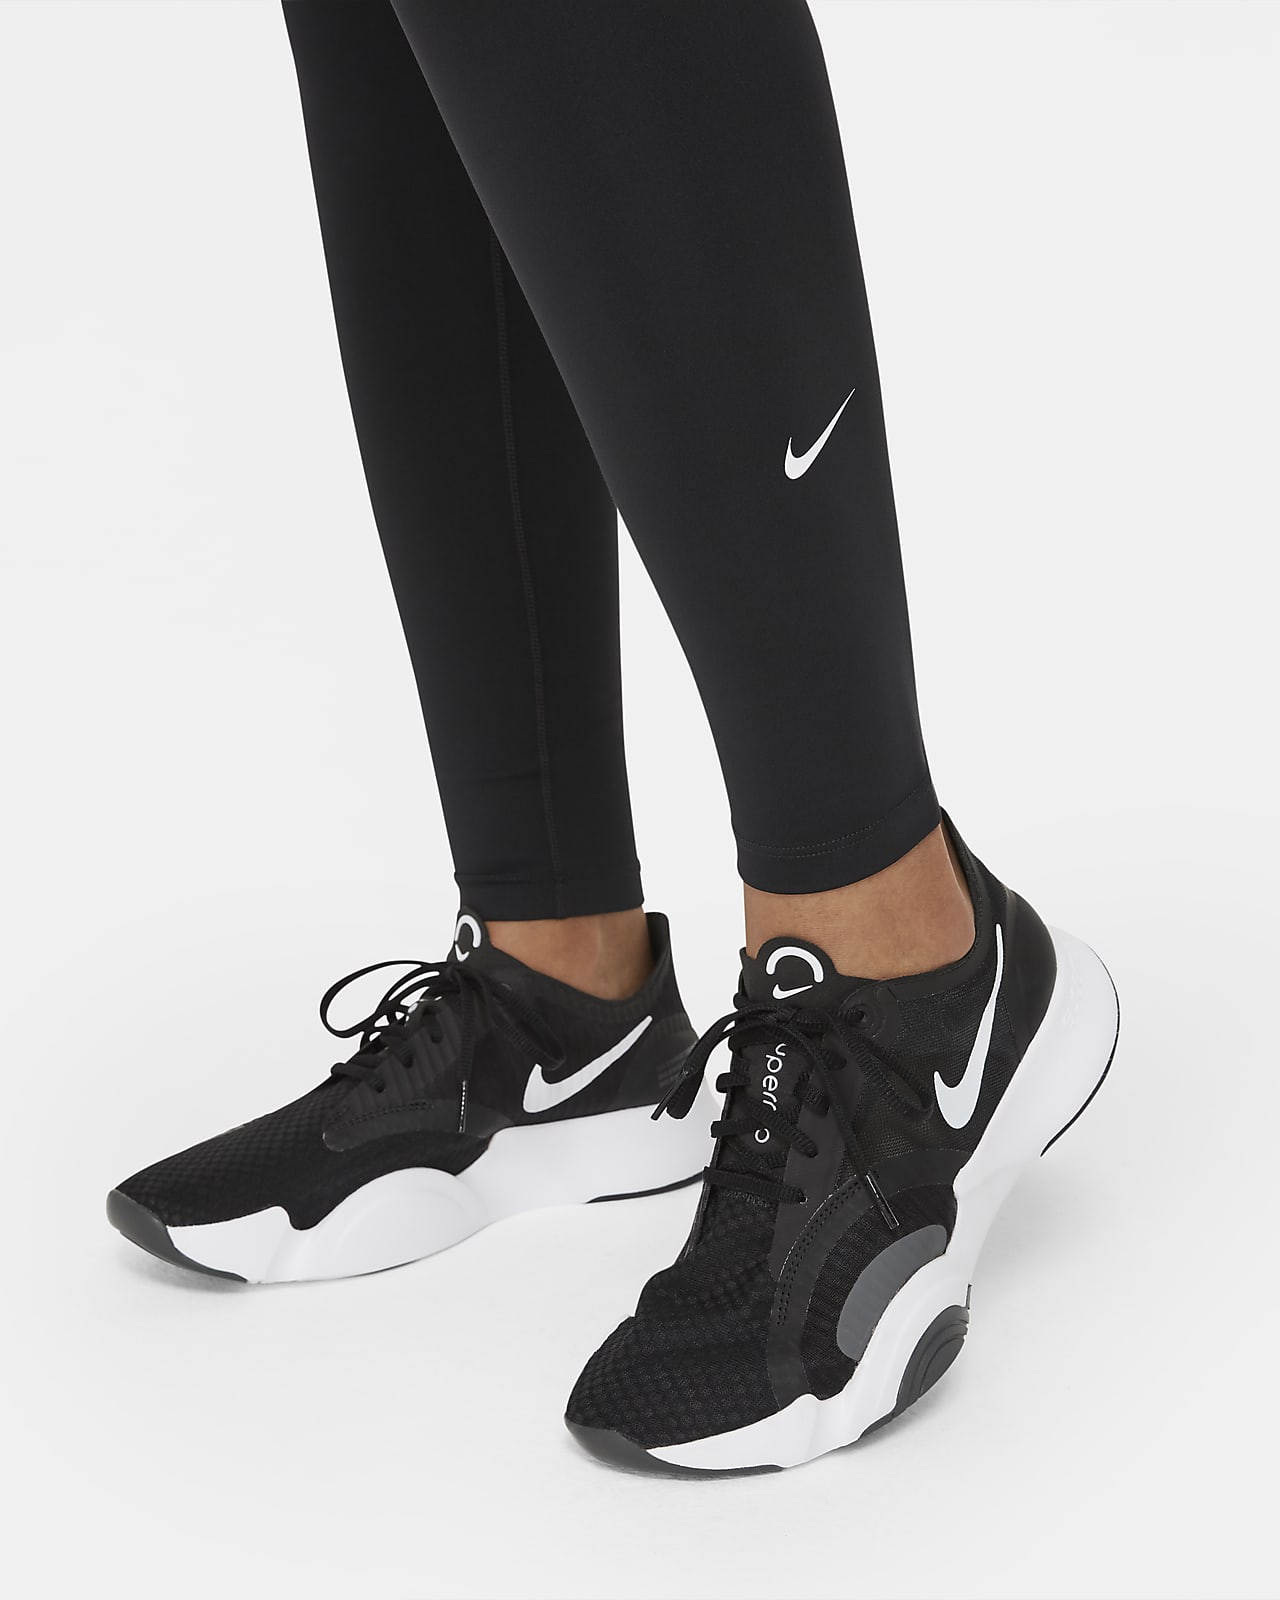 Leggings de cintura normal Nike One para mulher. Nike PT